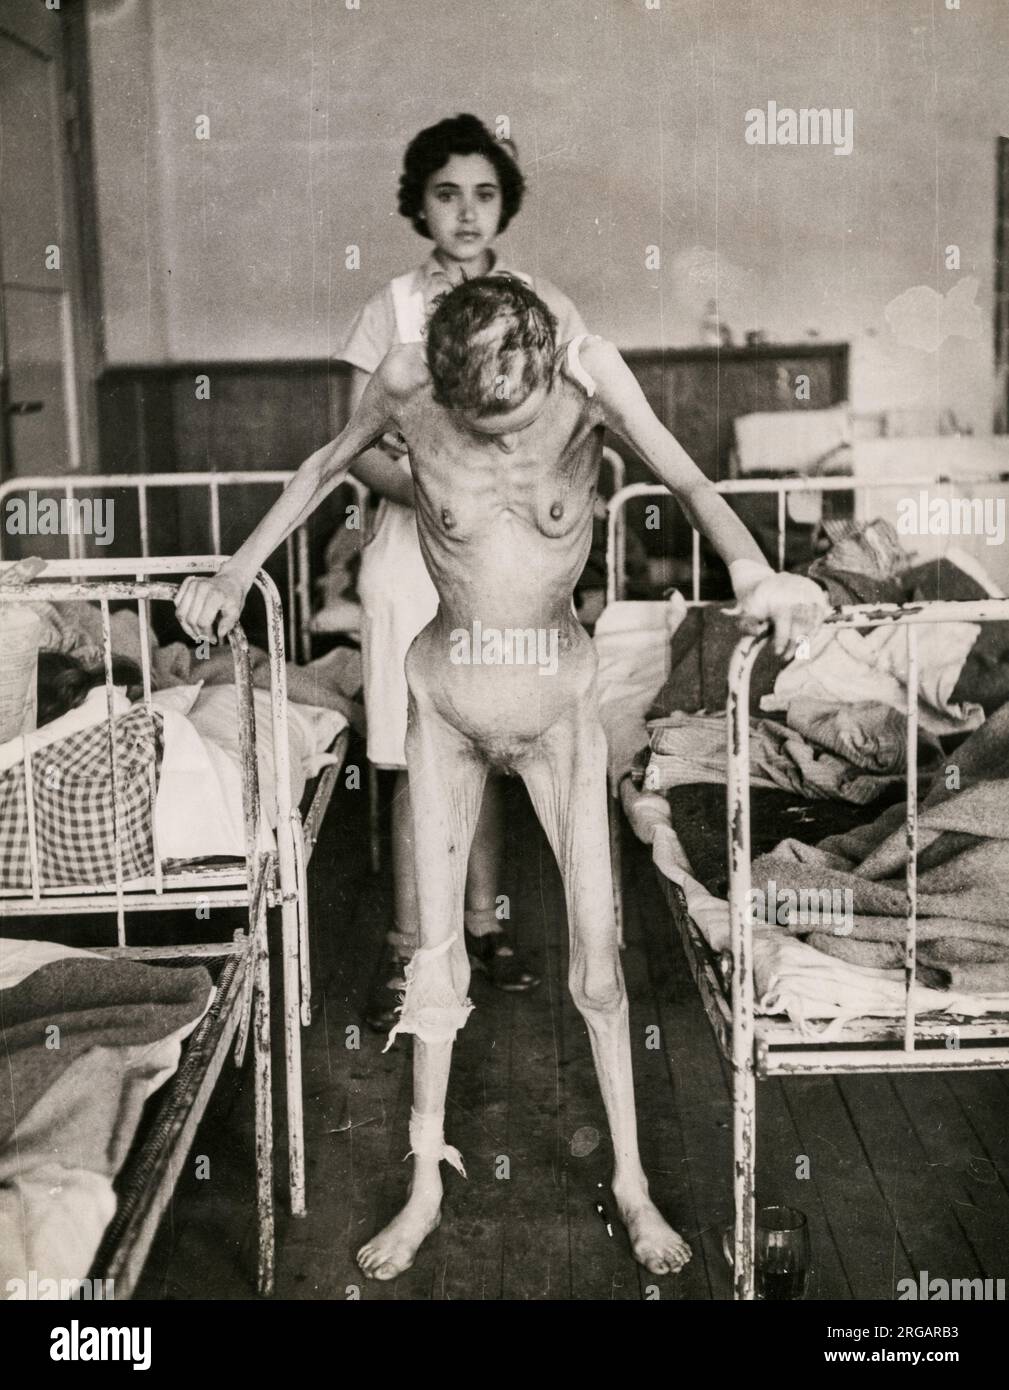 Vintage World War 11 WW2 Photografia - il sopravvissuto al campo di concentramento ebraico Margit Shcwartz, di 31 anni, di Budapest, in ospedale. Secondo la didascalia ha scelto di tirarsi in questa posizione senza aiuto, così potrebbe essere fotografata, essendo stata in precedenza vitalmente incapace di muoversi. Foto Stock